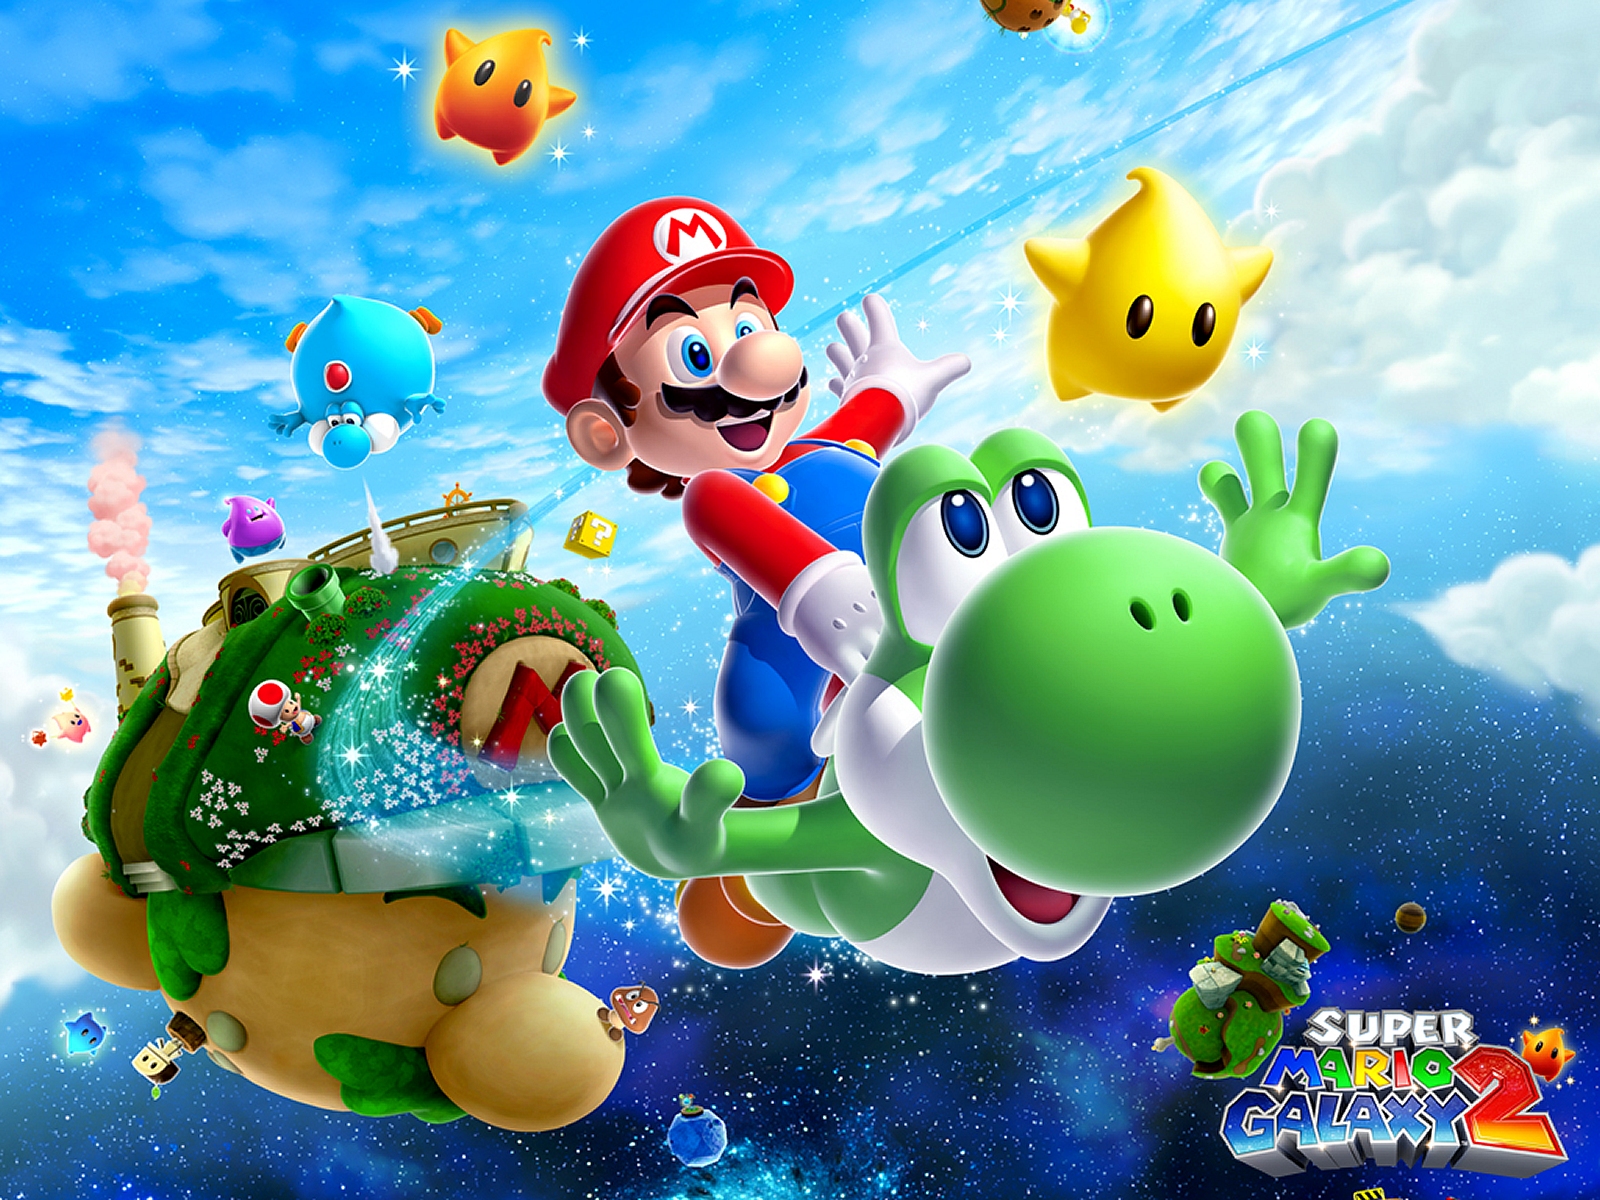 "Super Mario Galaxy 2" desktop wallpaper (1600 x 1200 pixels)